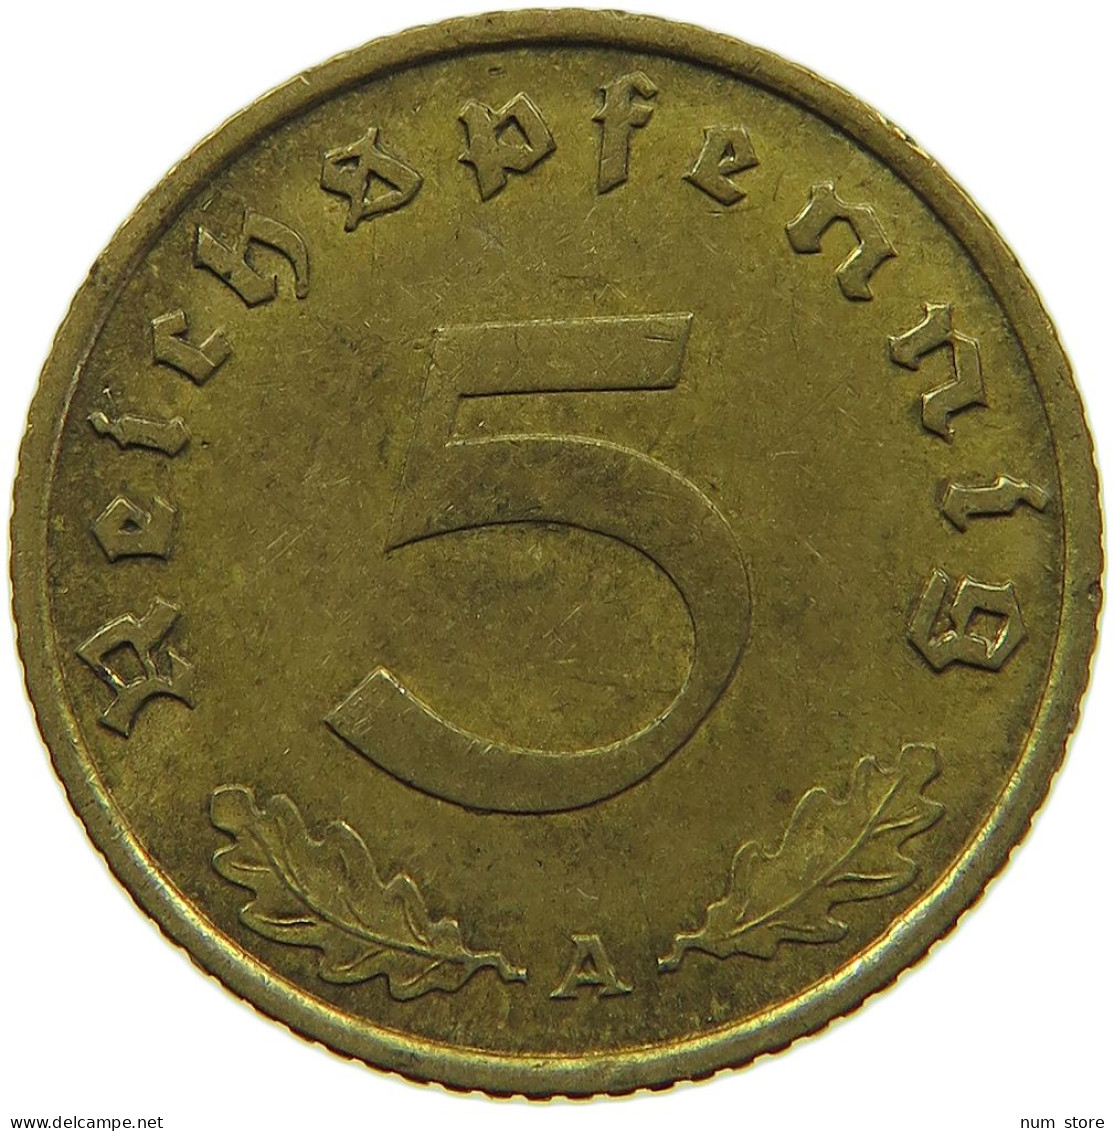 GERMANY 5 REICHSPFENNIG 1939 A #s091 0739 - 5 Reichspfennig